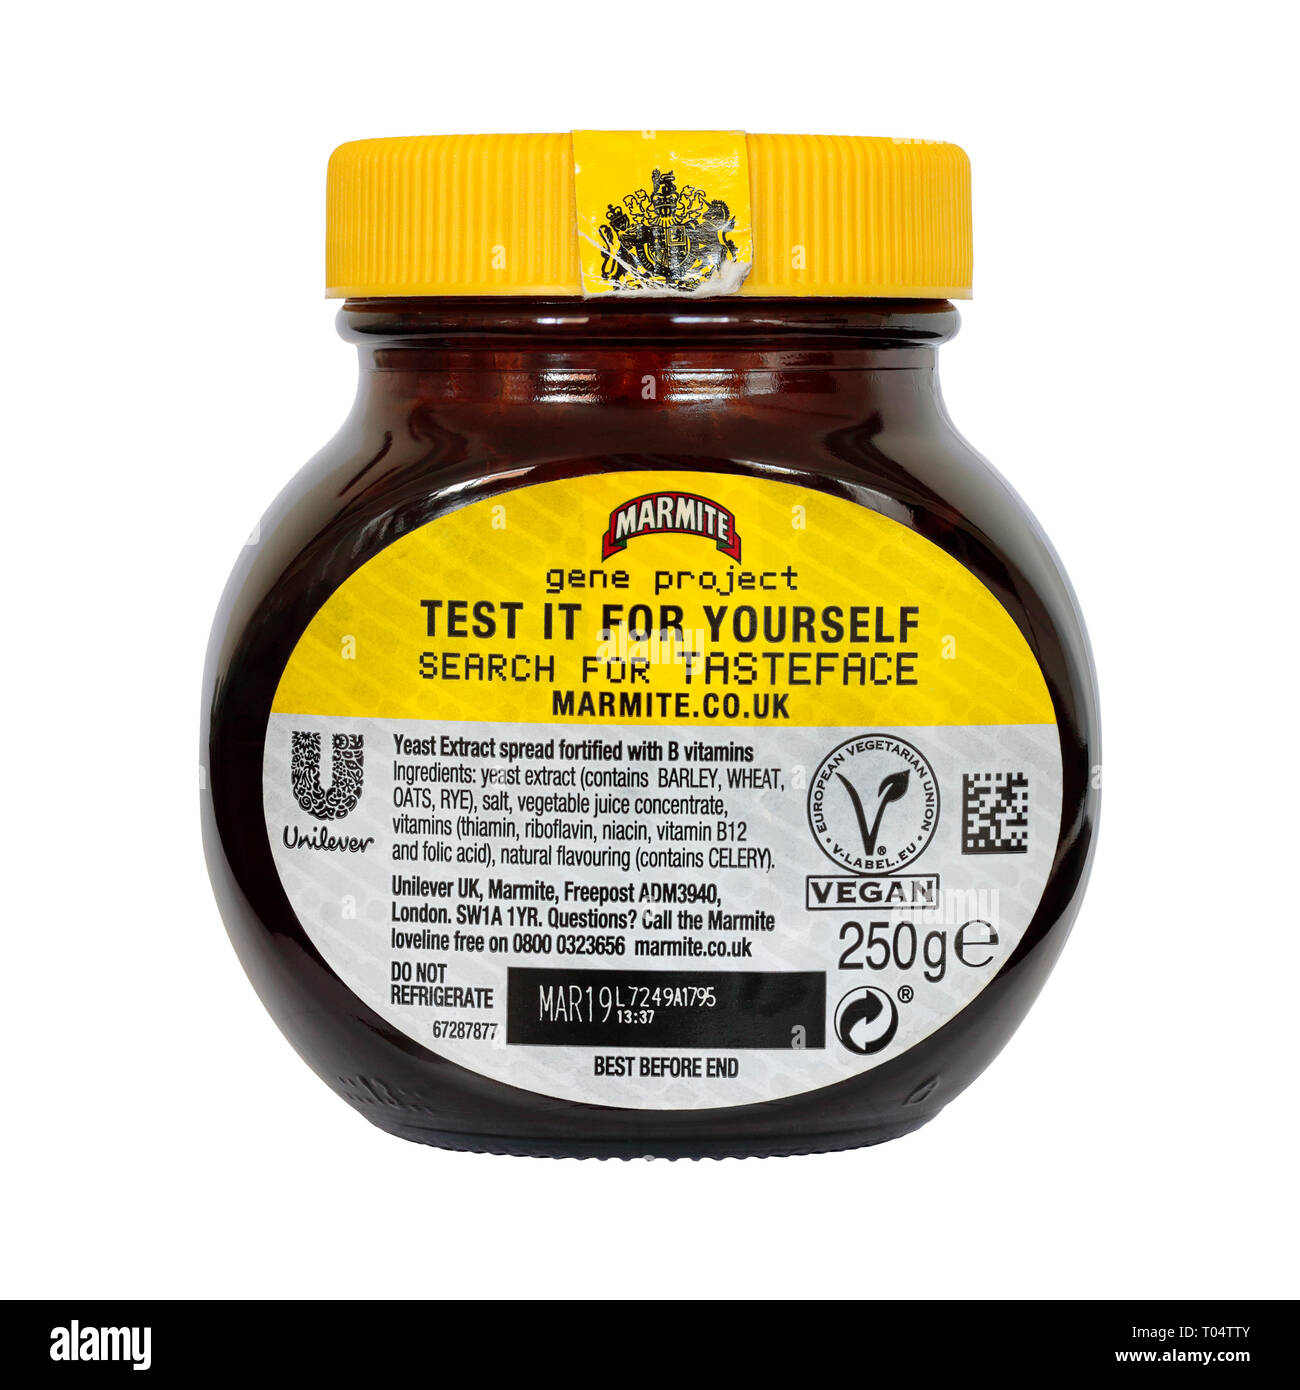 Vue arrière d'un pot de 250g du gène Marmite édition projet isolé sur un fond blanc avec date meilleur avant et le logo d'Unilever et logo vegan Banque D'Images